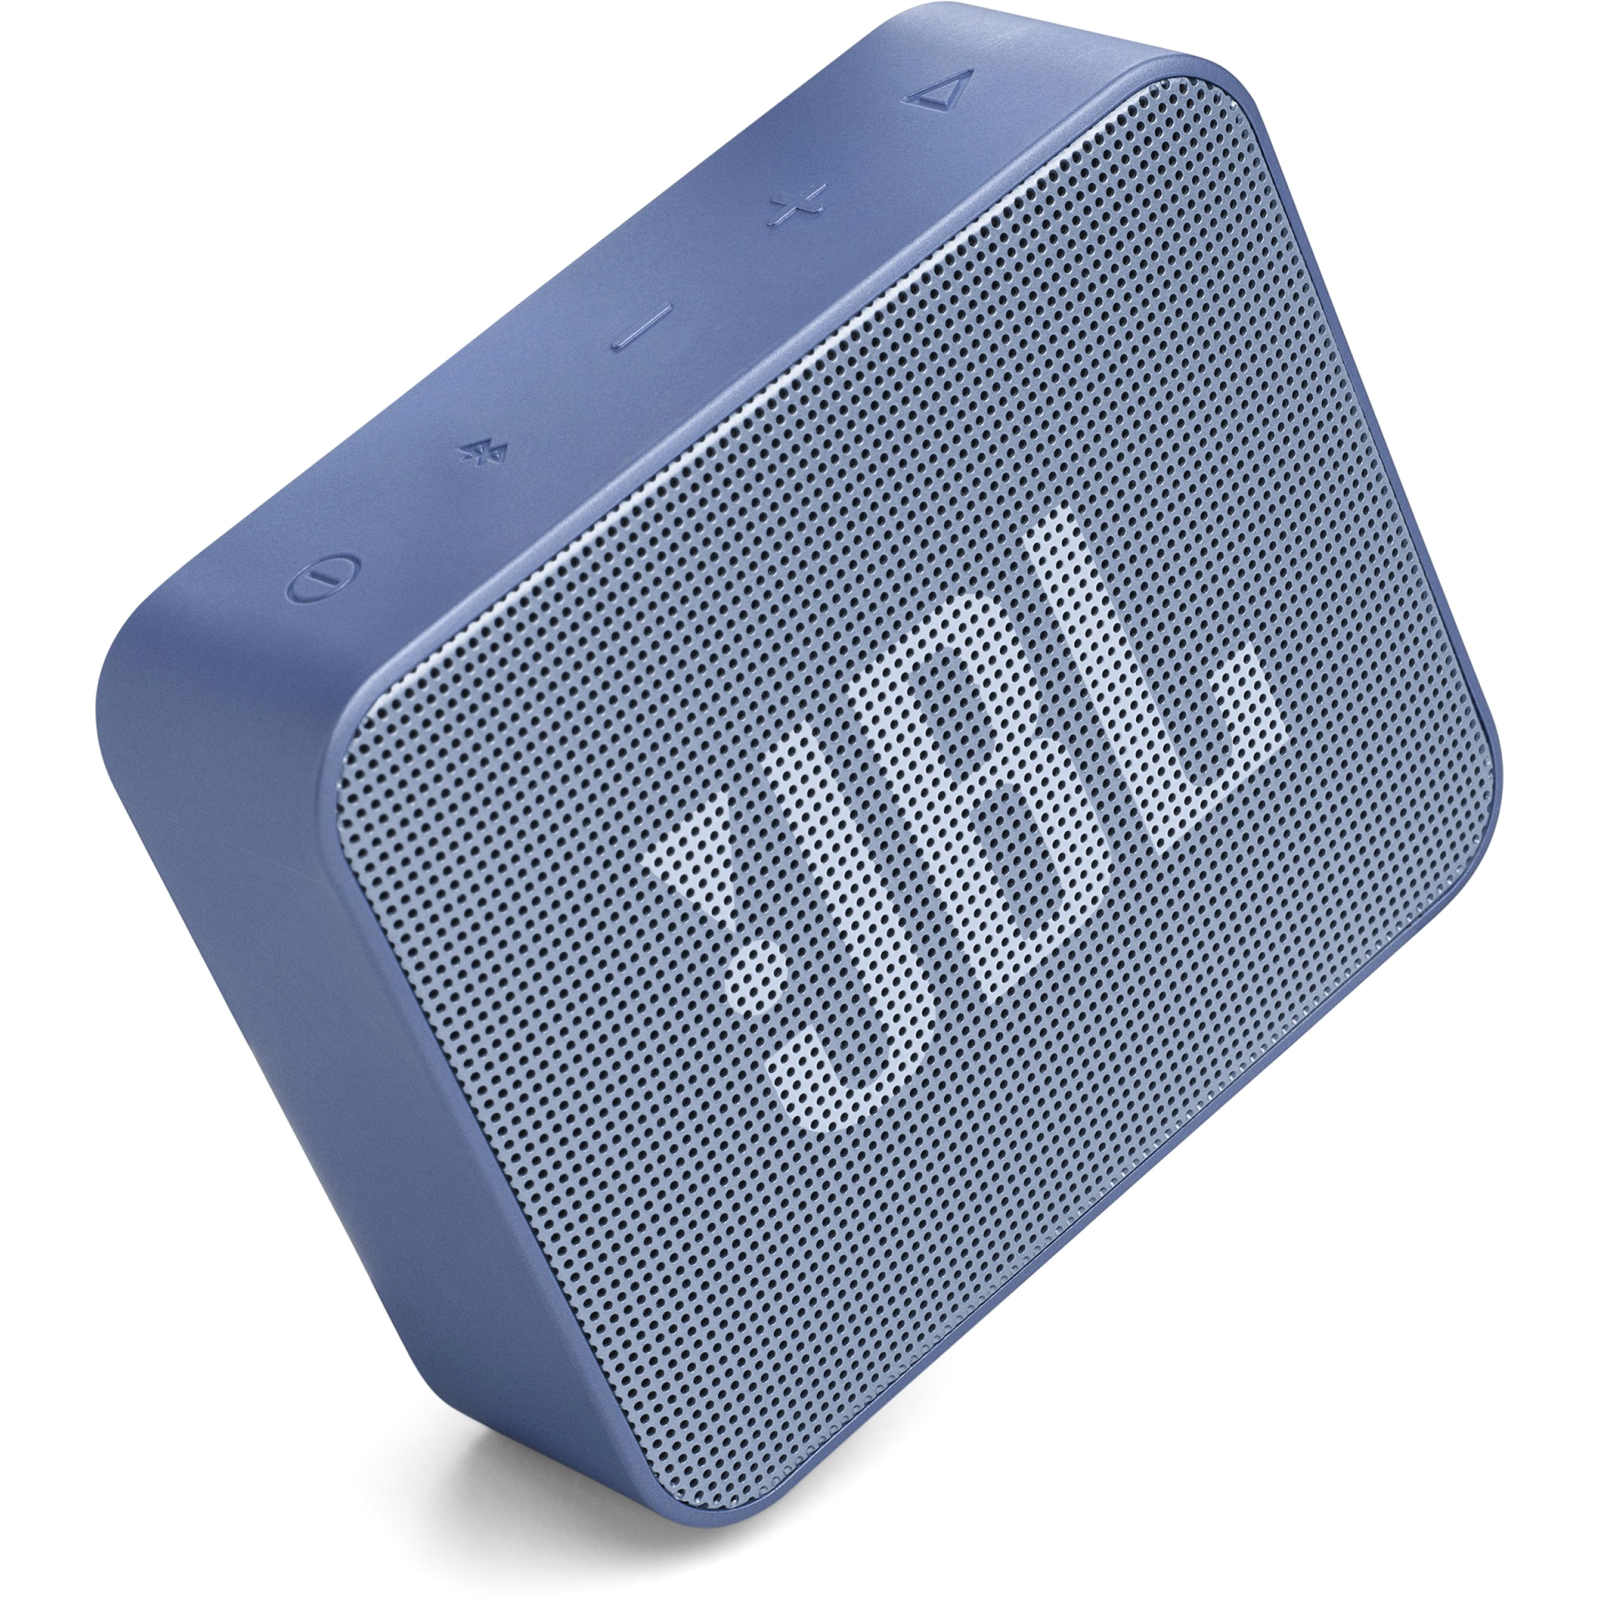 Акустична система JBL Go Essential Red (JBLGOESRED) зображення 3